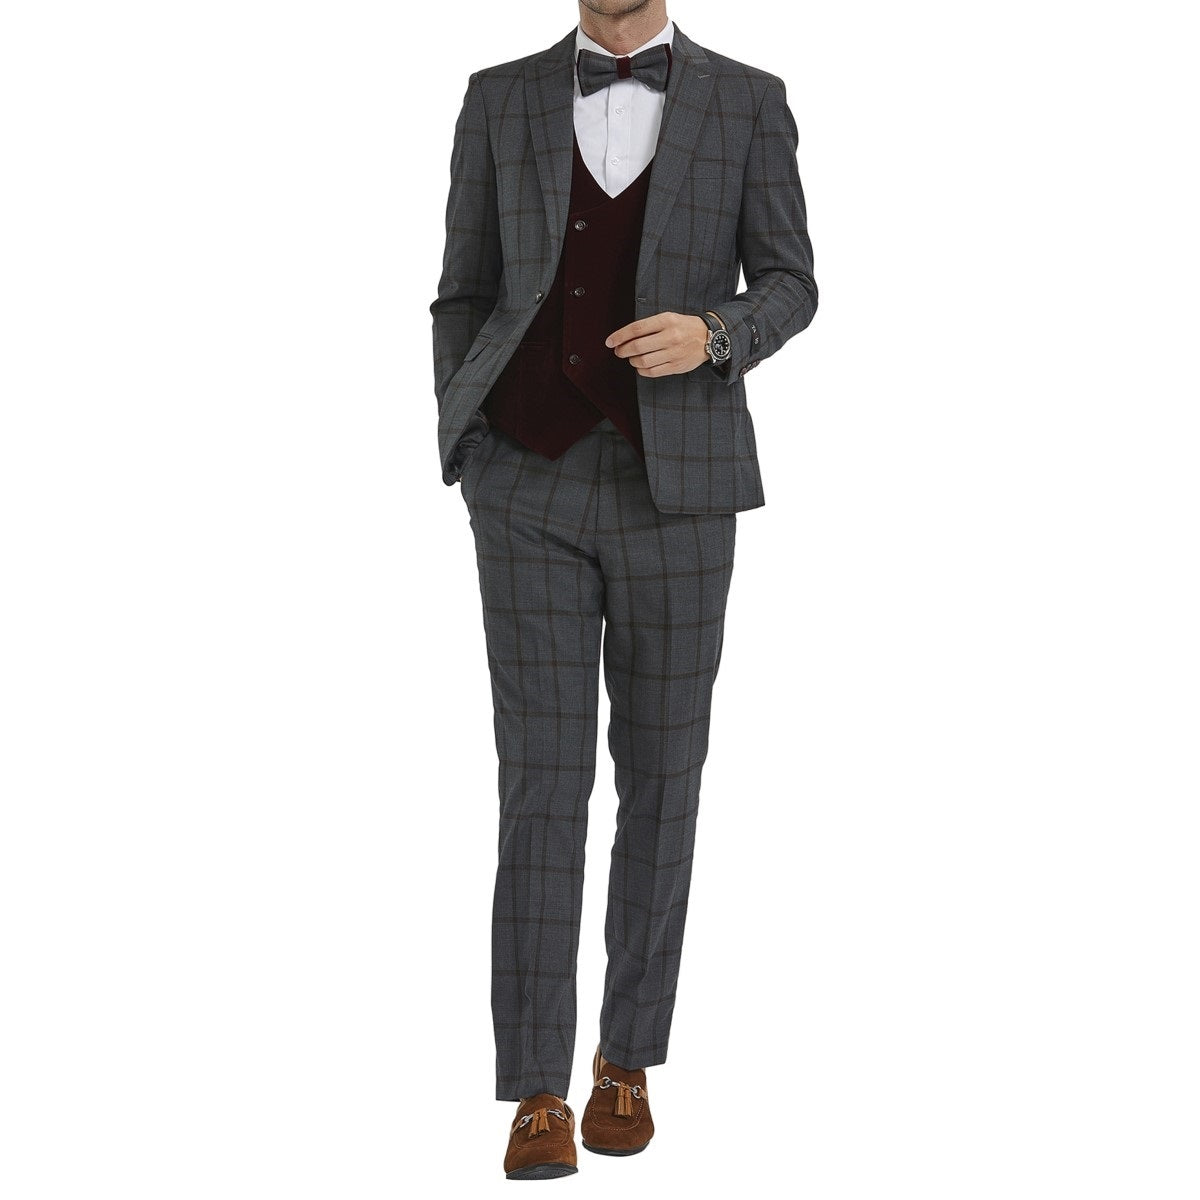 Traje Formal para Hombre TA-M351SK-04 - Formal Suit for Men